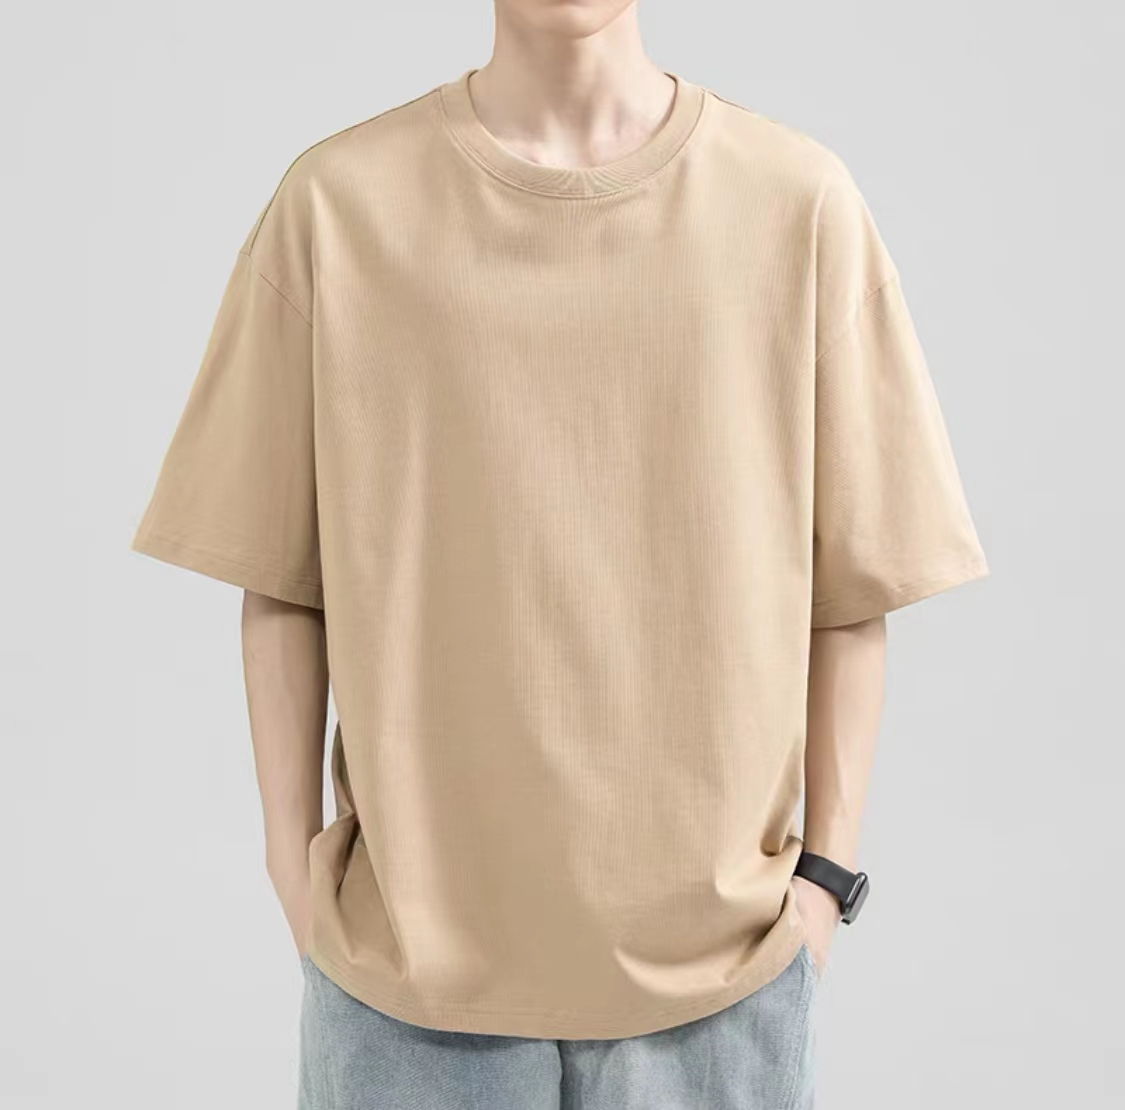 Kinwoo T735 Plain Basic Tshirt Unisex Classic oversized shirt for man ...